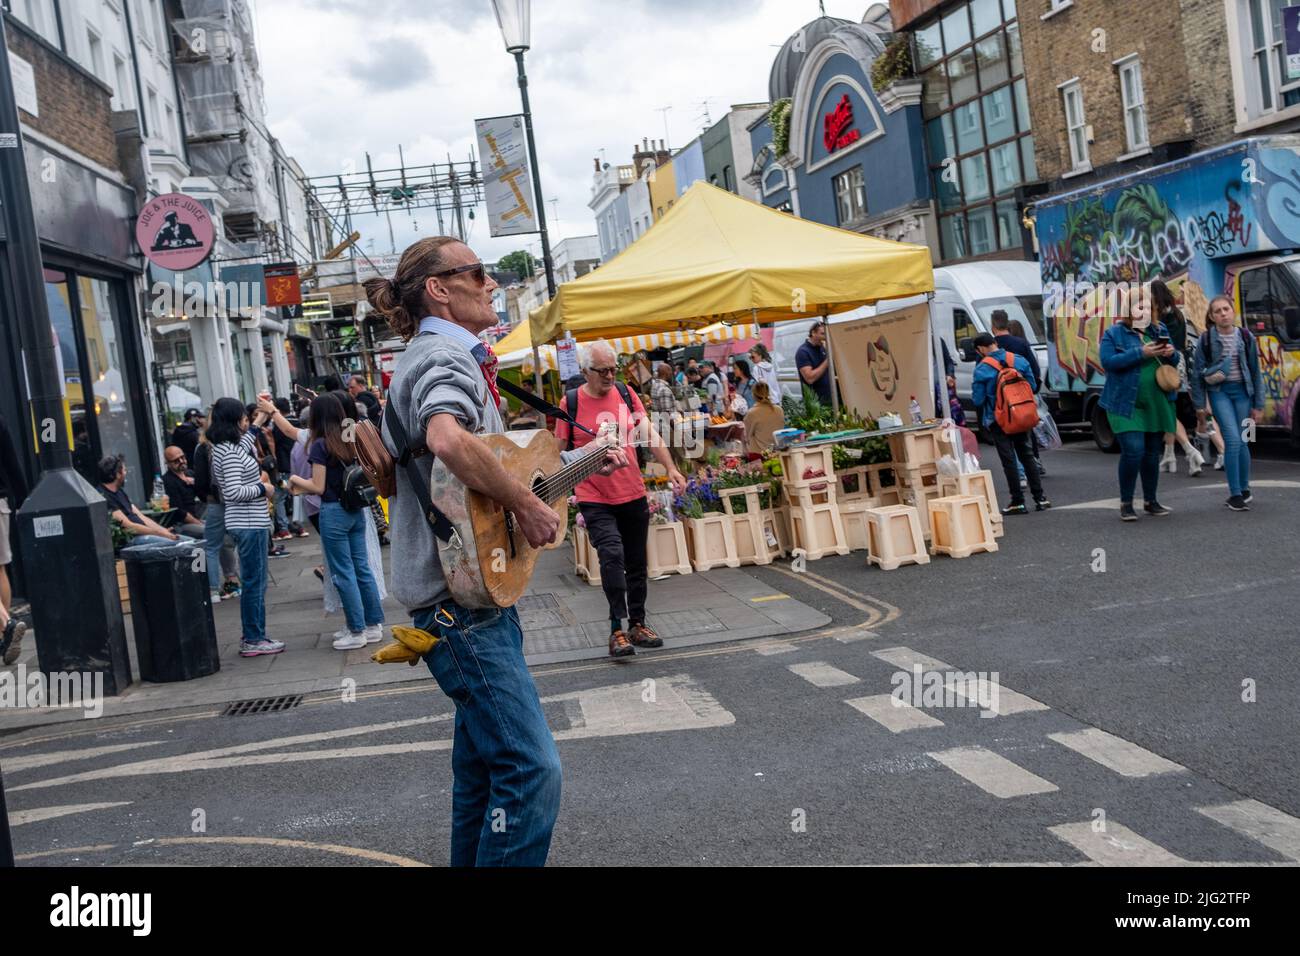 London - Juni 2022: Portobello Market in Notting Hill, West London. Ein Wahrzeichen Straßenmarkt, der für seine Antiquitäten berühmt ist. Stockfoto